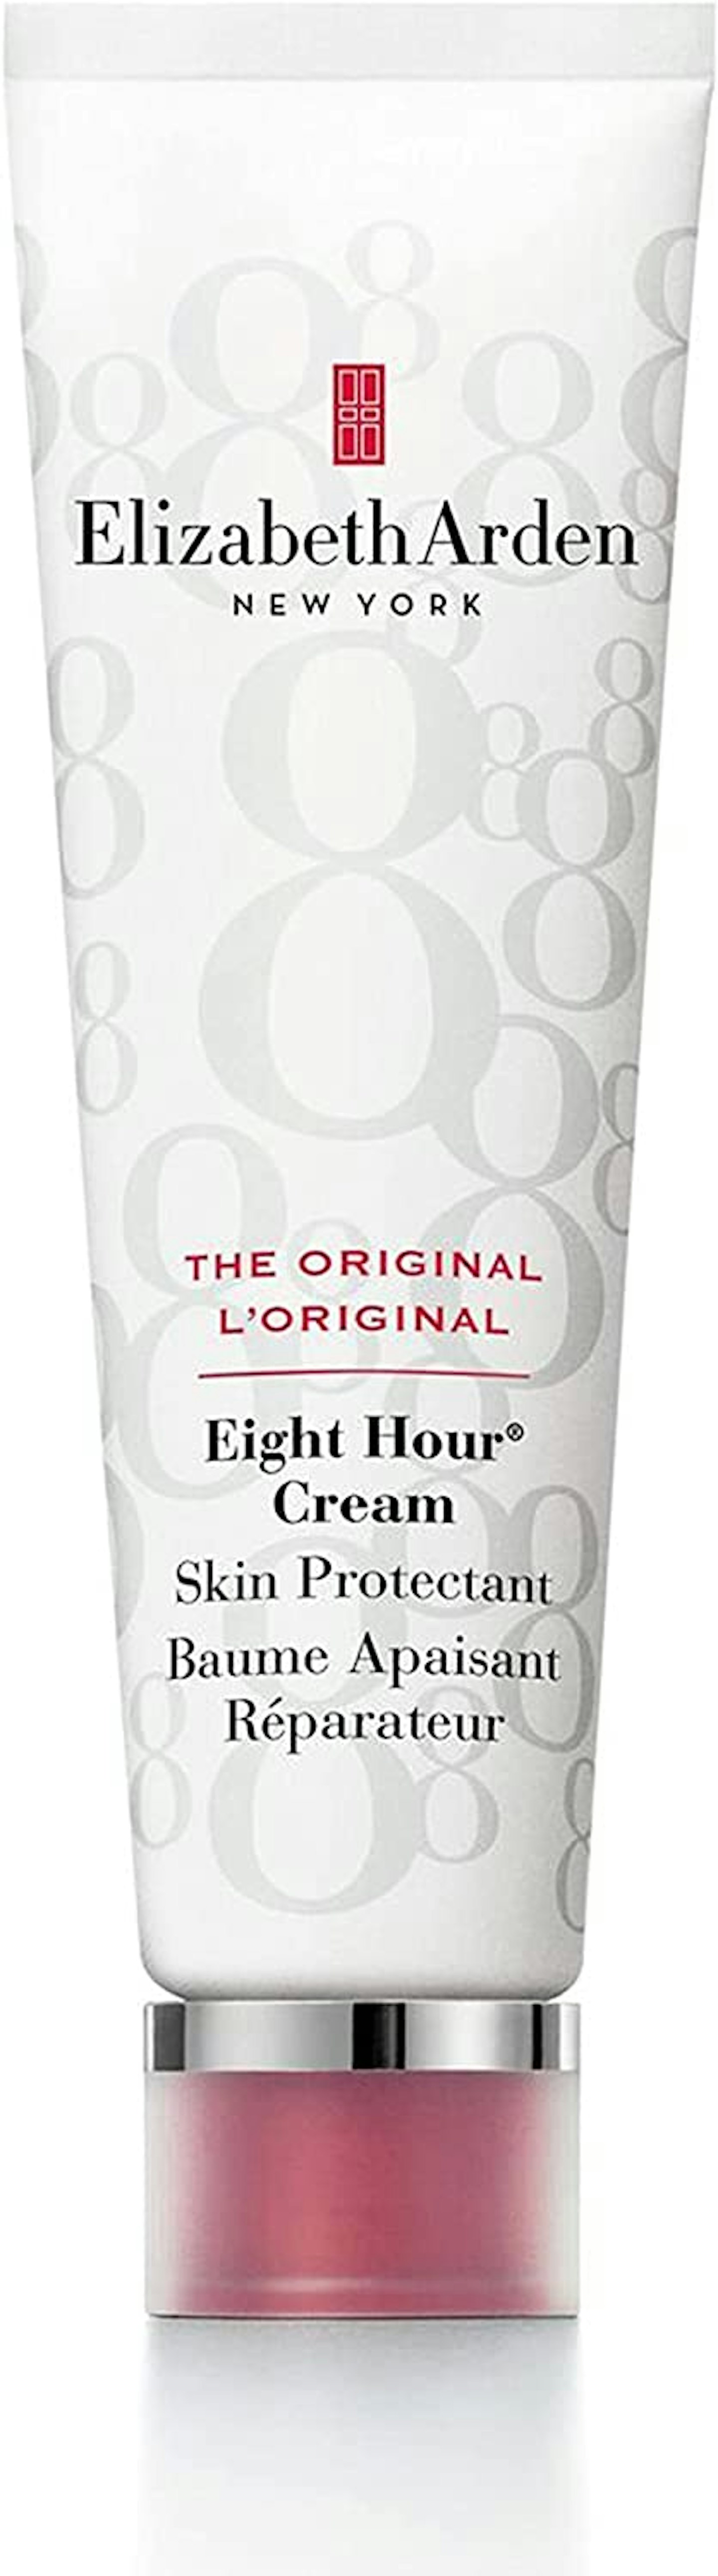 Elizabeth Arden's Eight Hour Cream